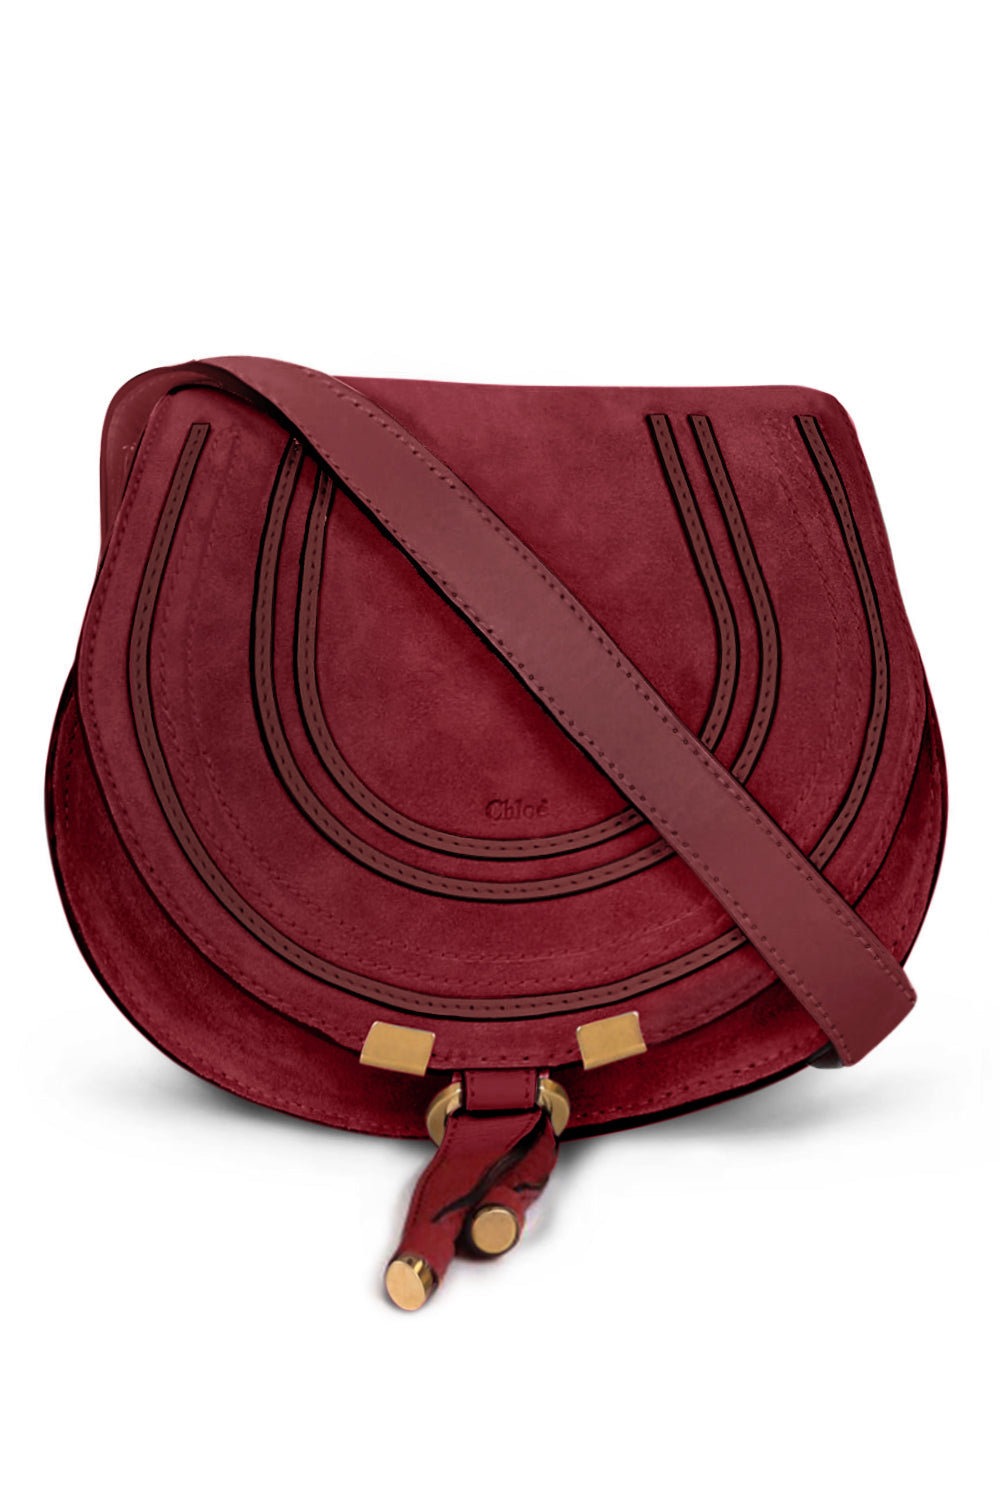 CHLOE BAGS RED MARCIE SMALL BAG | DARK RUBY SUEDE